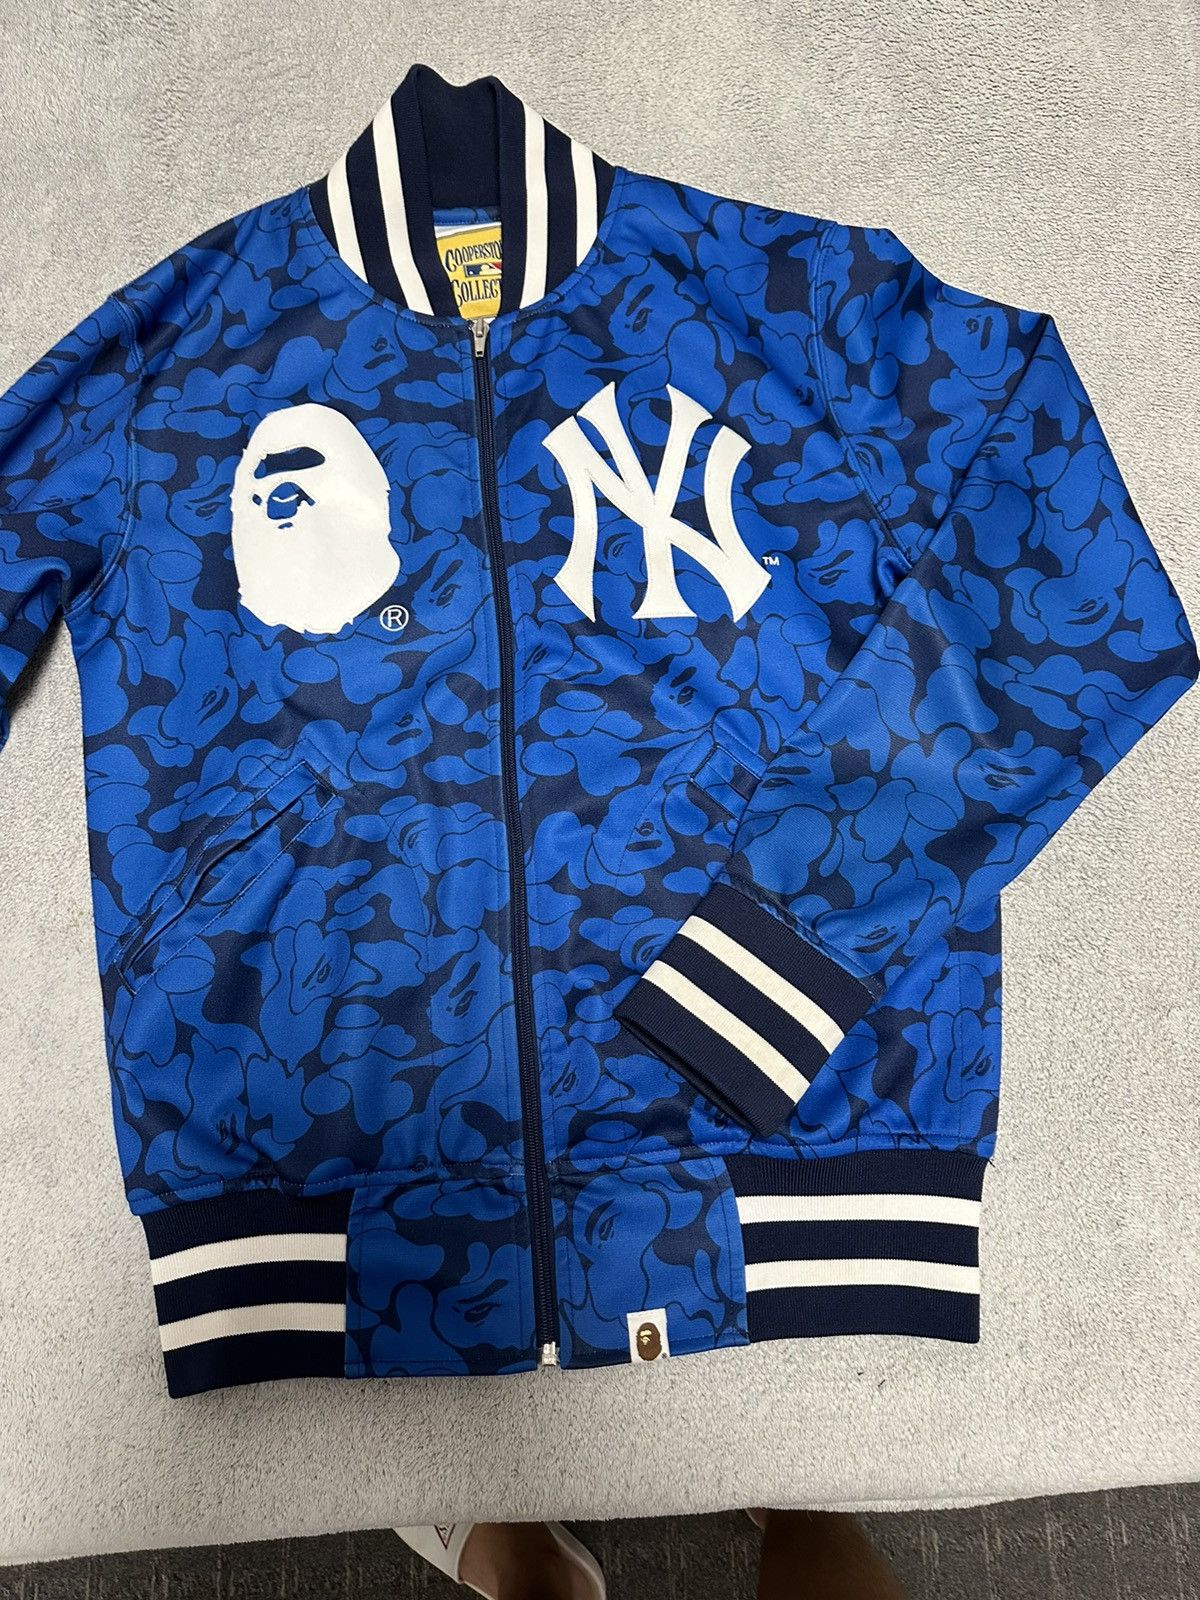 Bape Bape x Mitchell & Ness NY Yankees Jacket